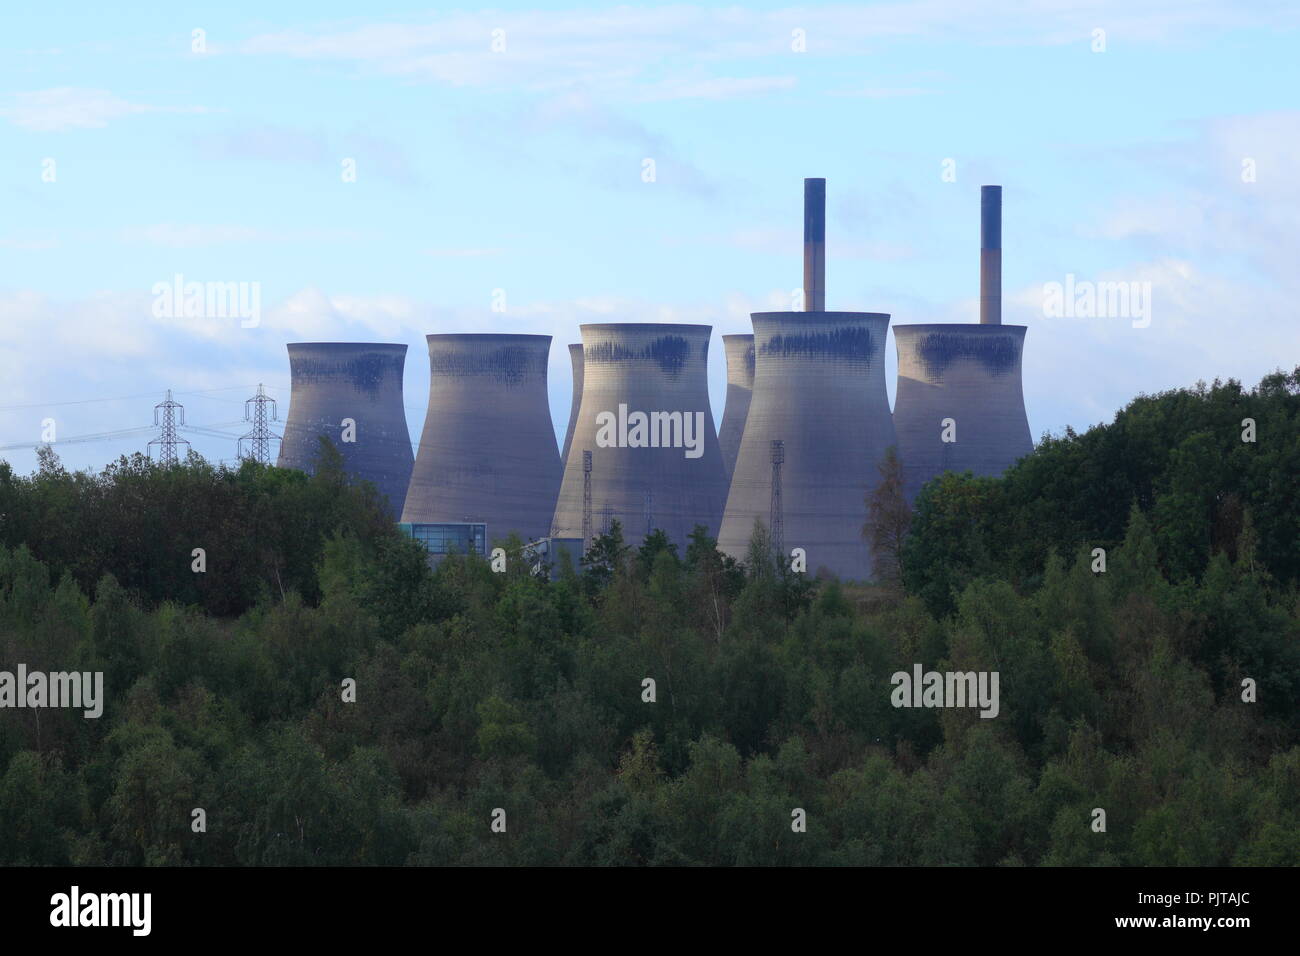 Die kühltürme von Ferrybridge Power Station von Meilen entfernt gesehen werden. Hier sind Sie von der RSPB Fairburn Ings Naturschutzgebiet gesehen Stockfoto